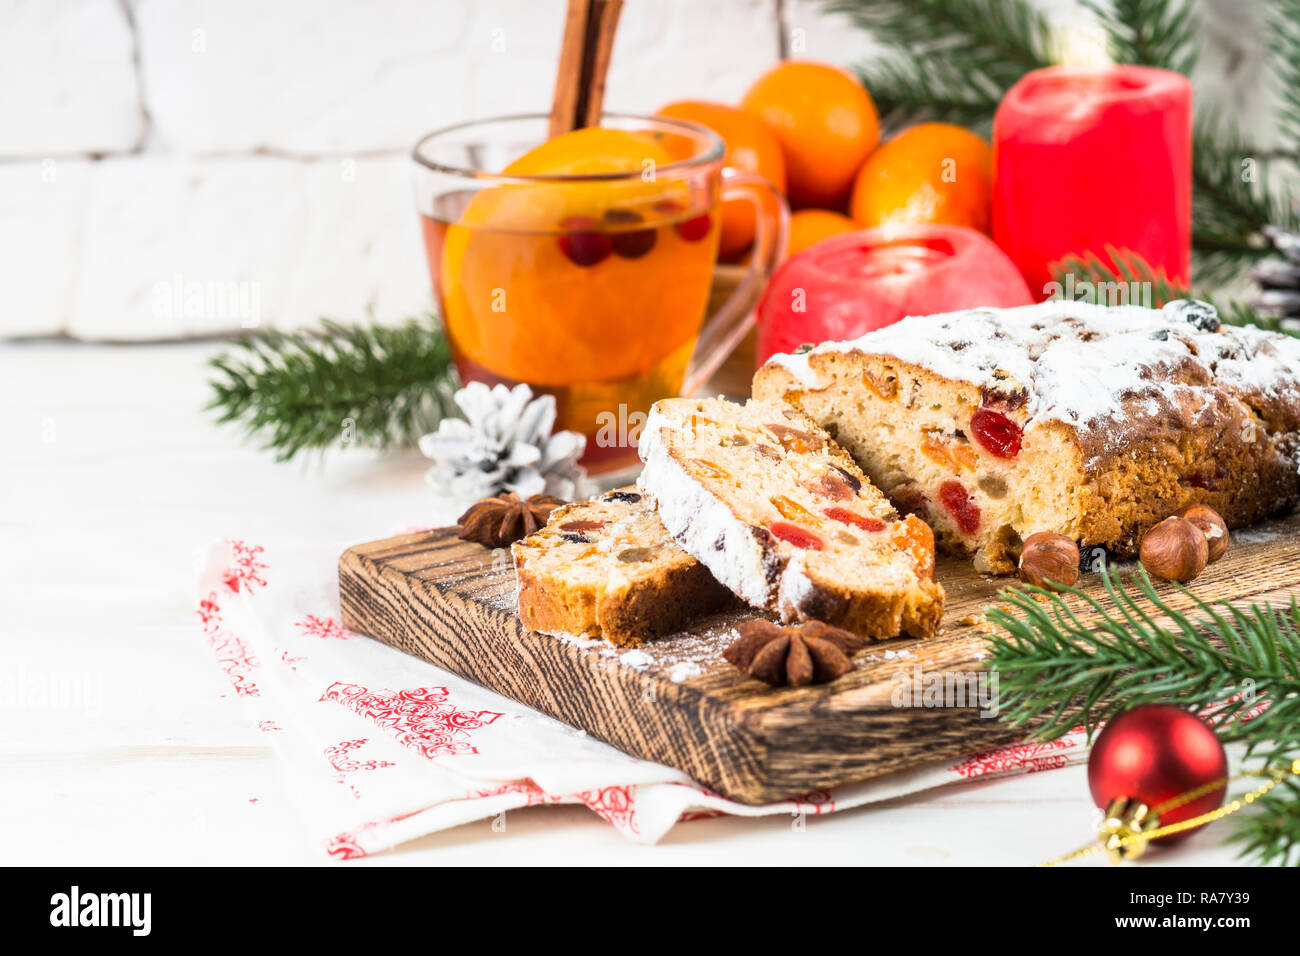 Stollen de Noël traditionnel avec ftuitcake les fruits séchés et les noix sur le tableau blanc. La nourriture de Noël. Banque D'Images